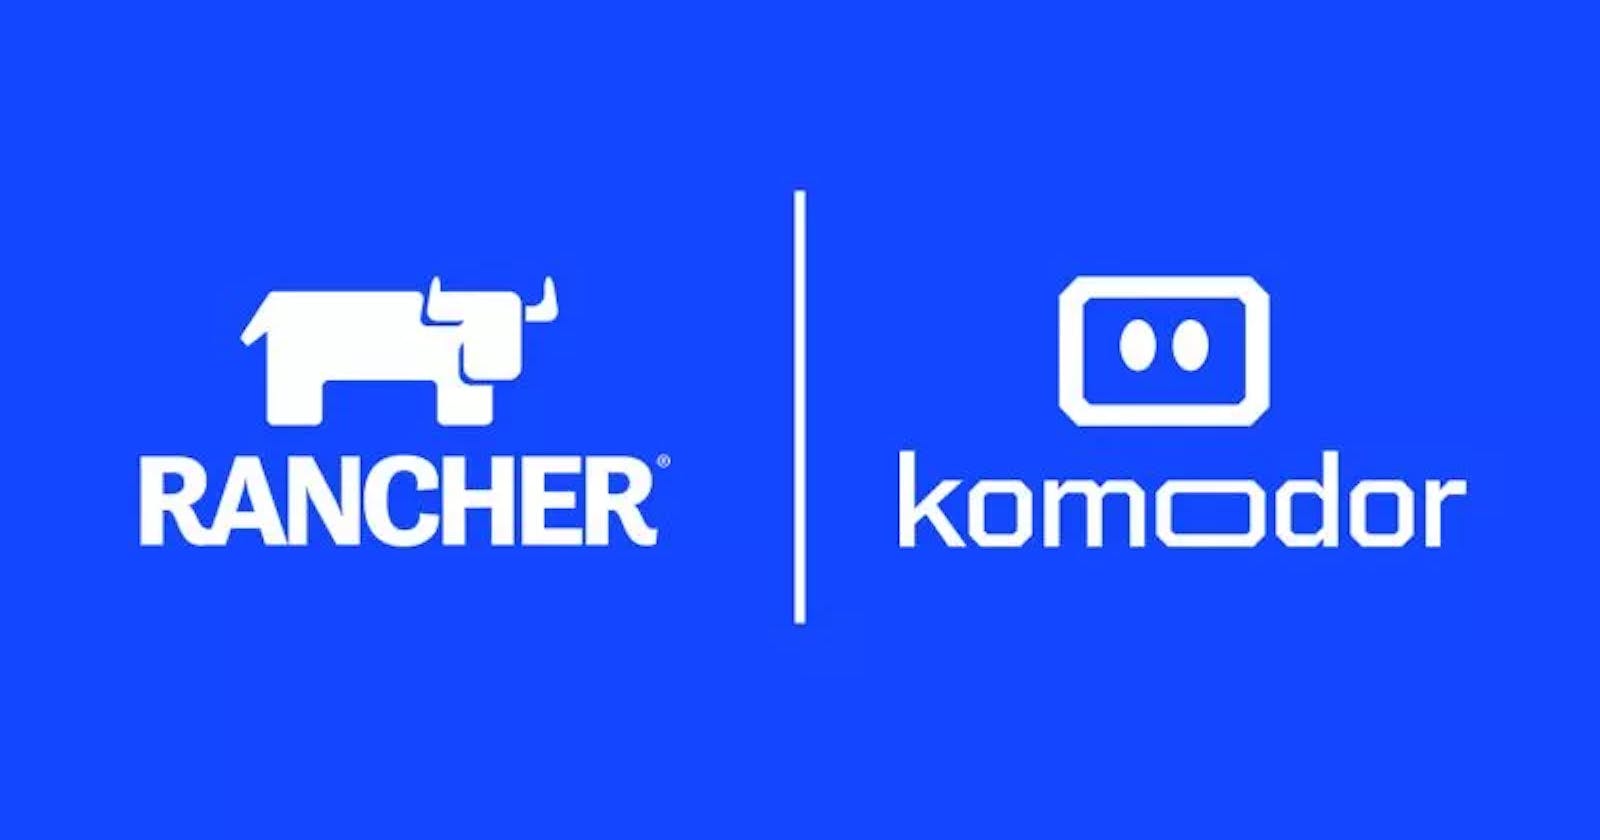 Komodor vs Rancher: A Comparison of Kubernetes Management Platforms